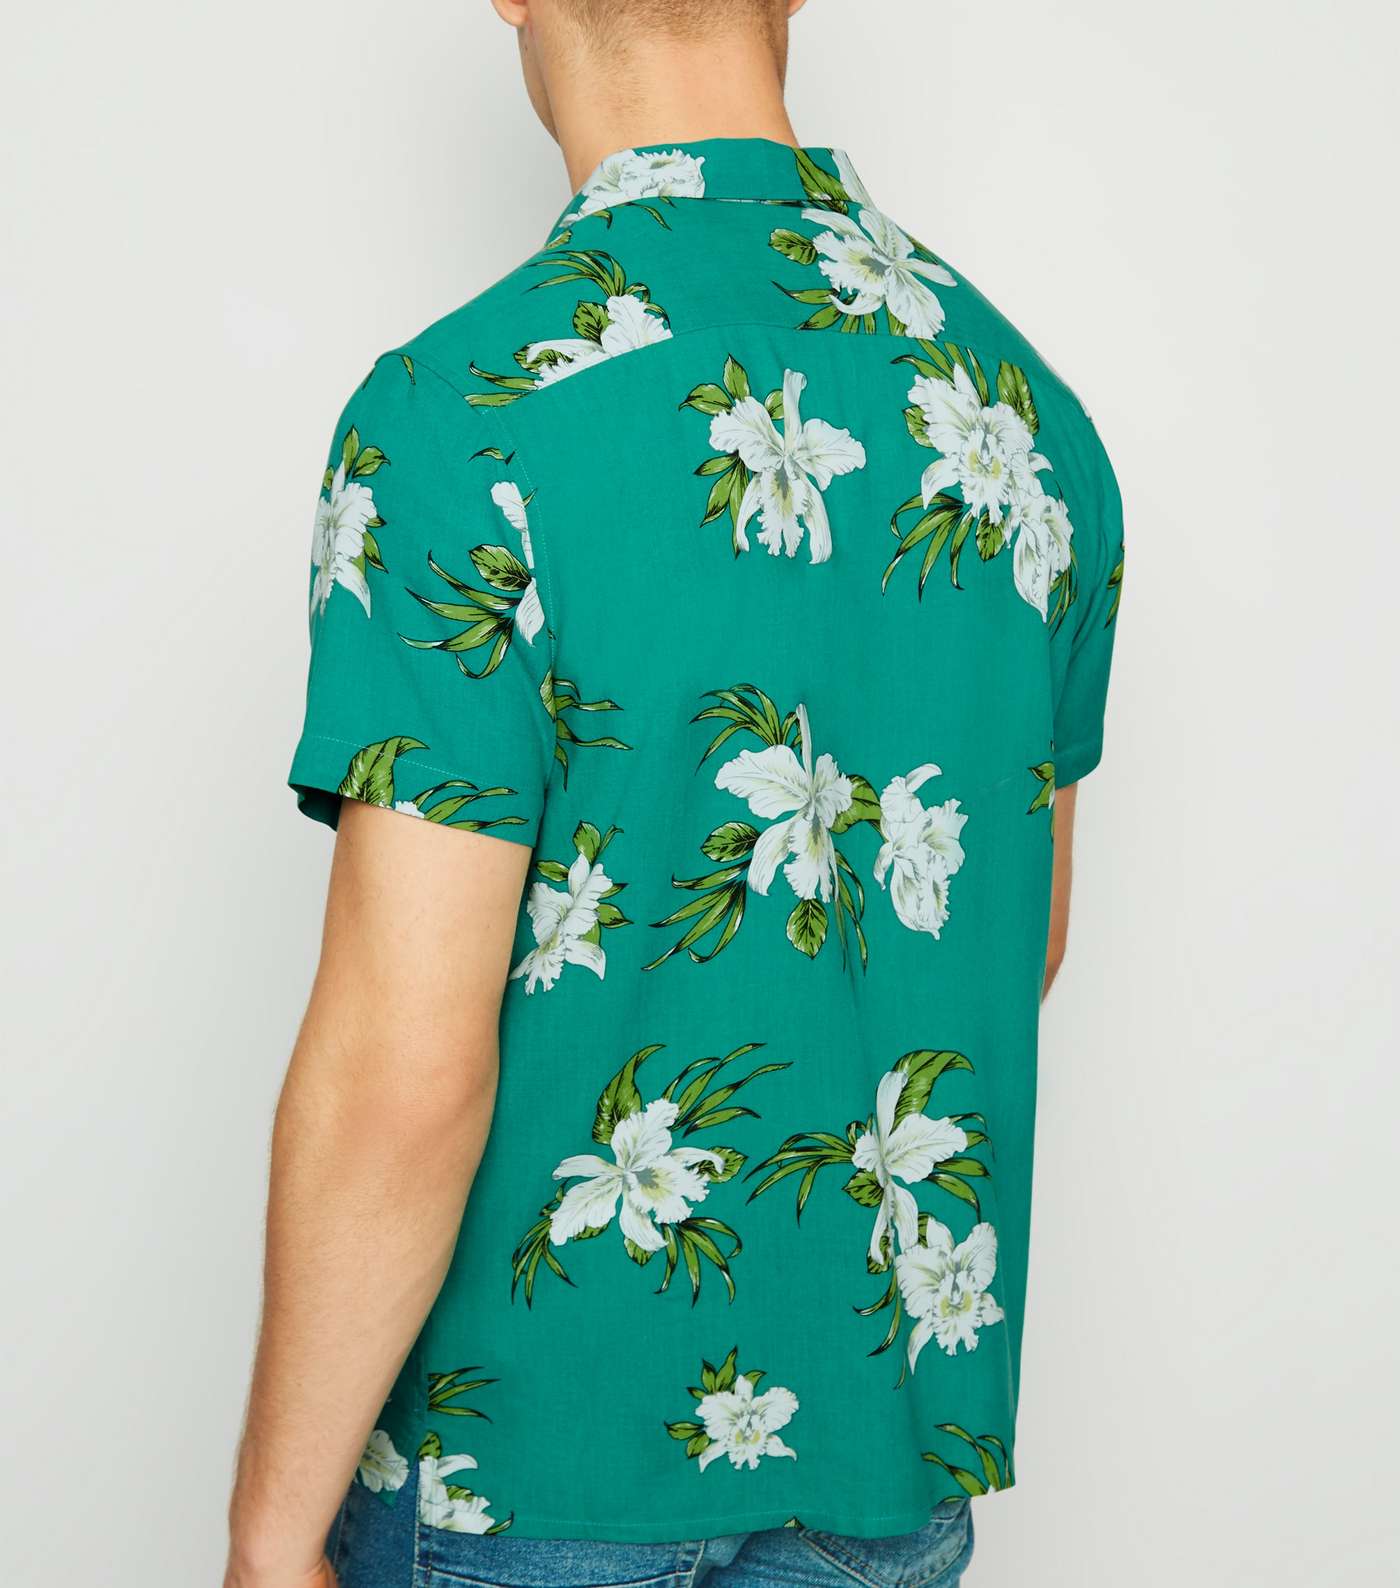 Teal Floral Short Sleeve Shirt Image 3